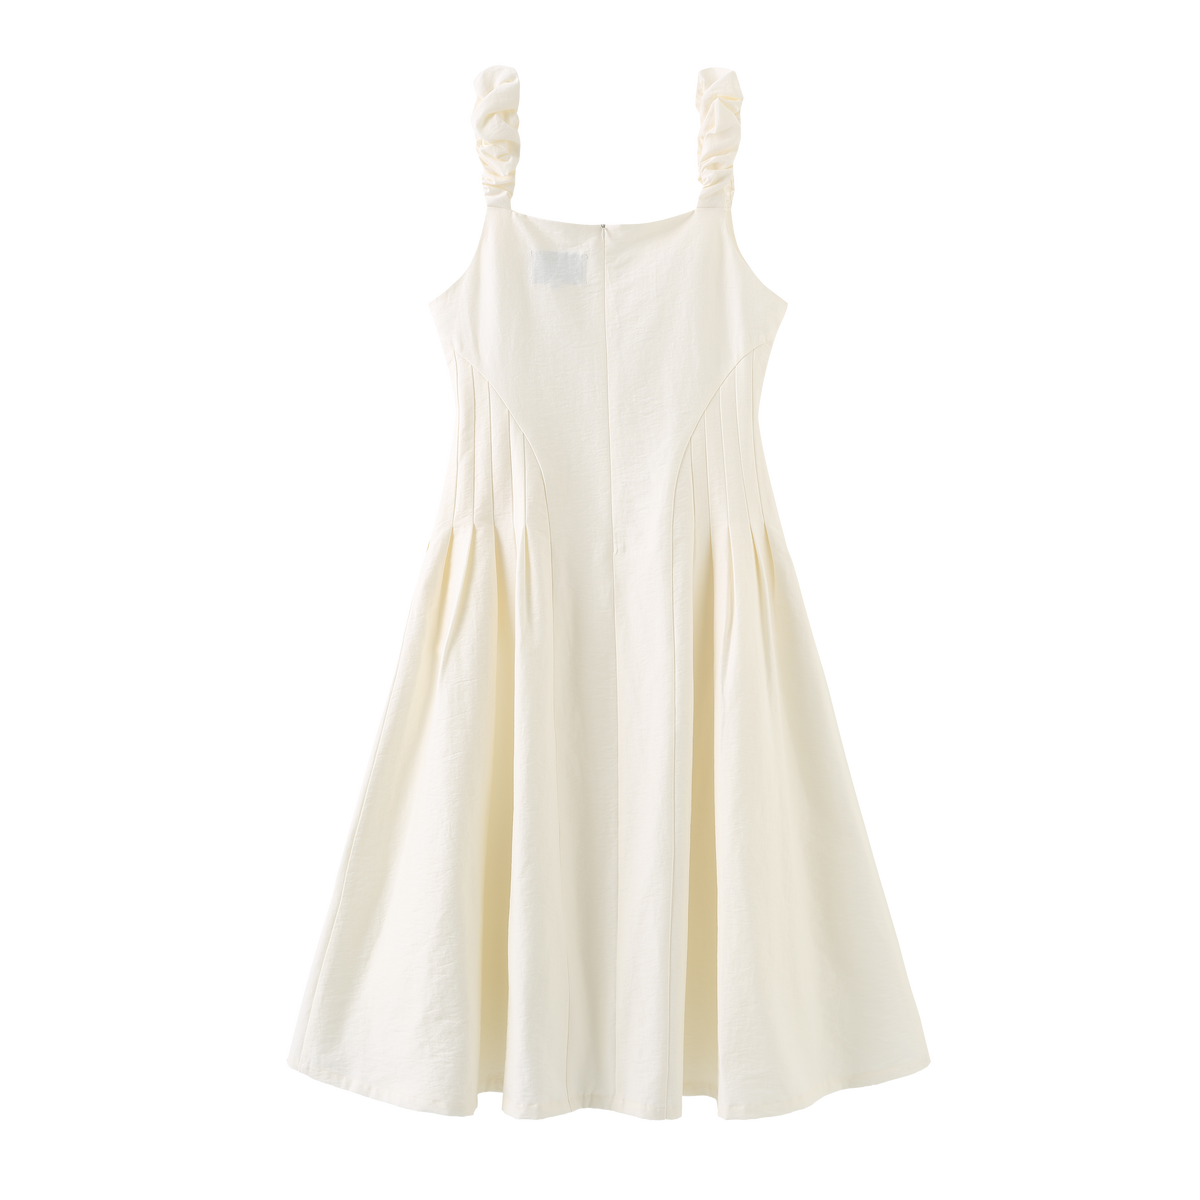 Cloudy Strap Dress - White